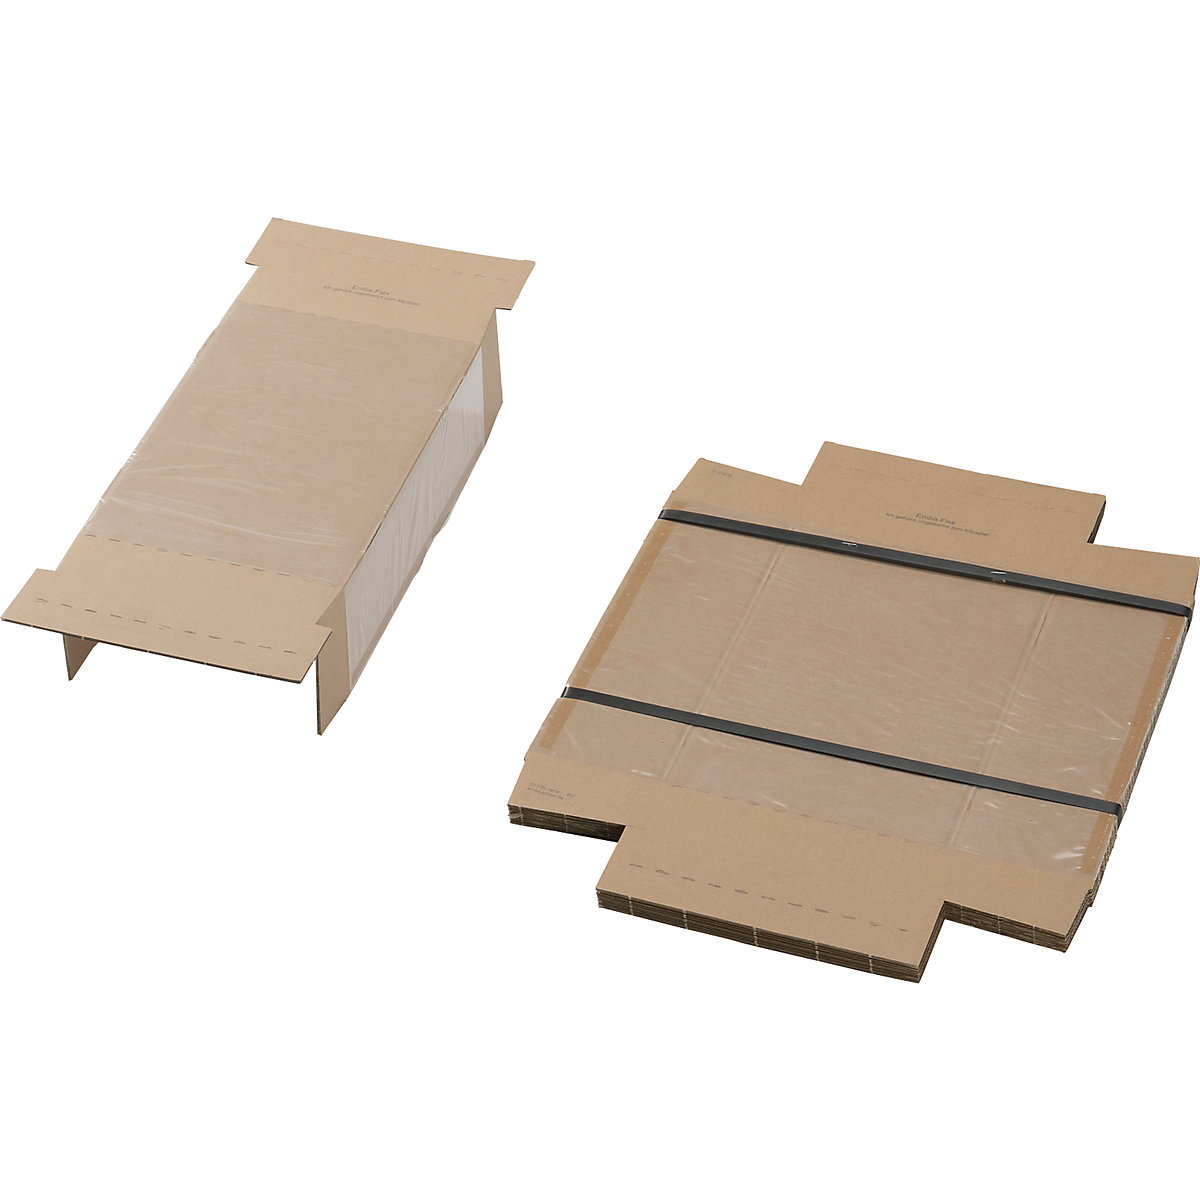 Karton, s fixační vložkou, bal.j. 25 ks, pro rozměry balení d x š x v 300 x 200 x 100 mm